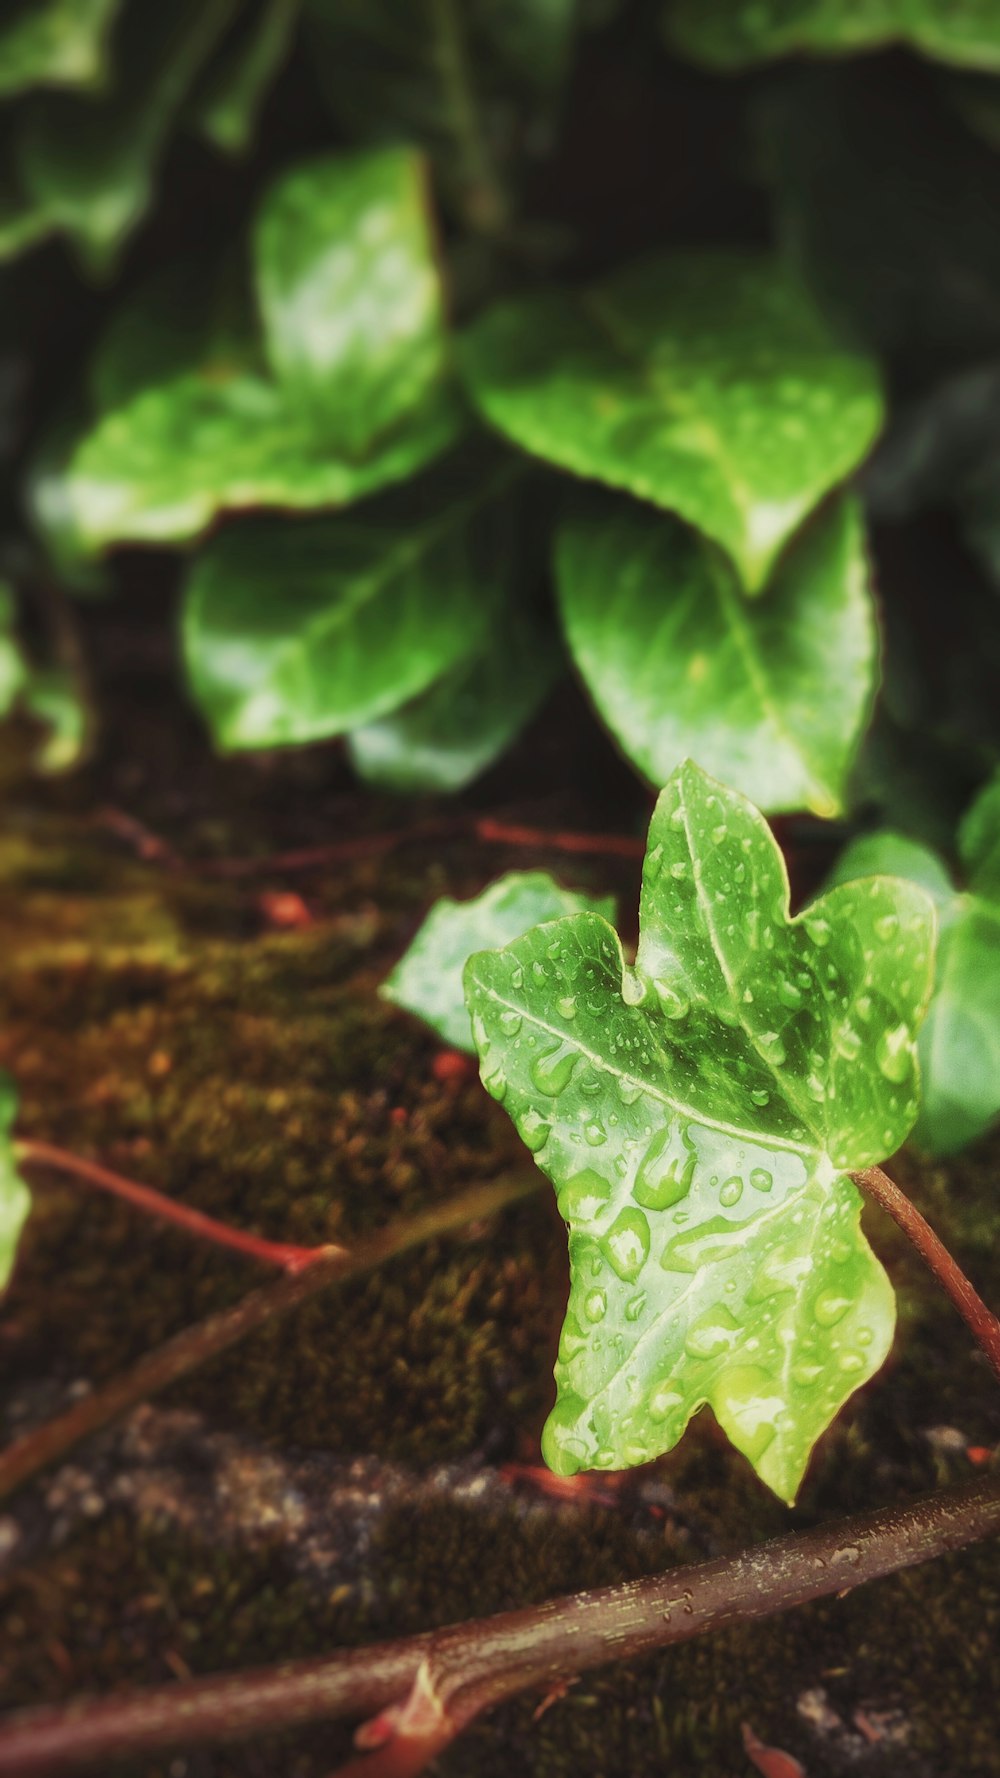 Wet green leaves.